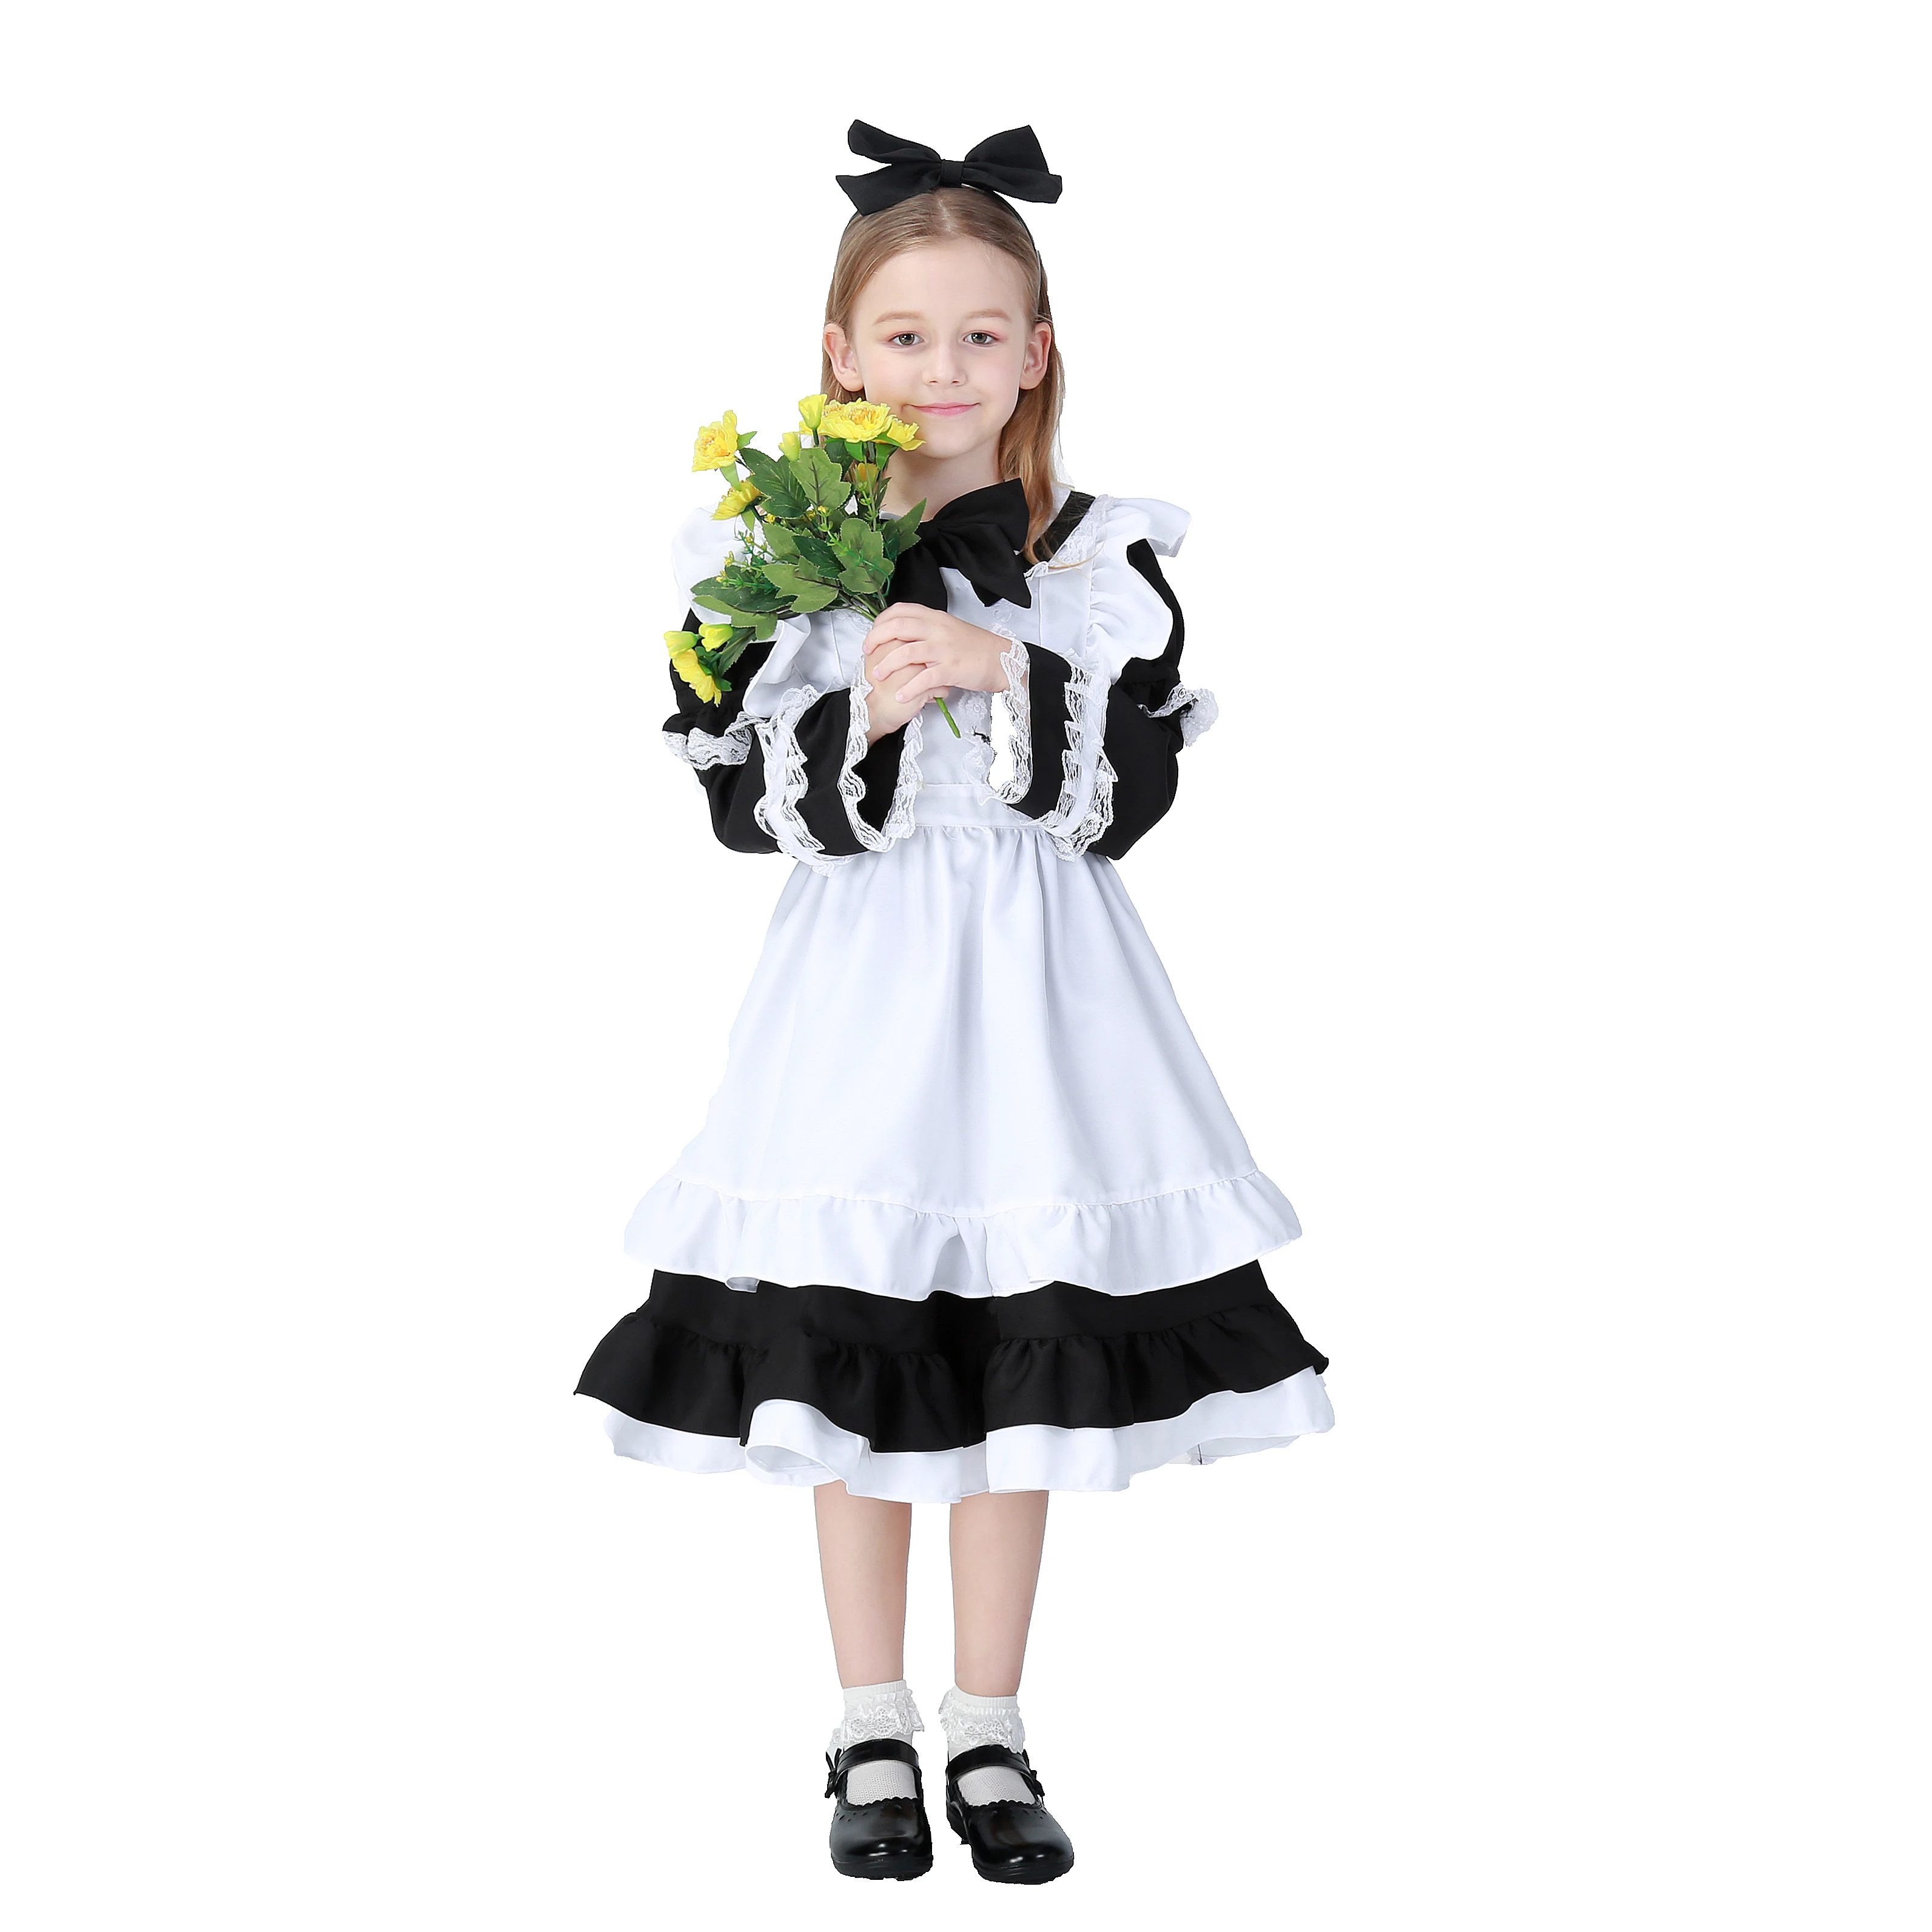 Fabrik heißer verkauf klassische französisch maid kostüm schwarz weiß maid kostüme kinder maid kostüm